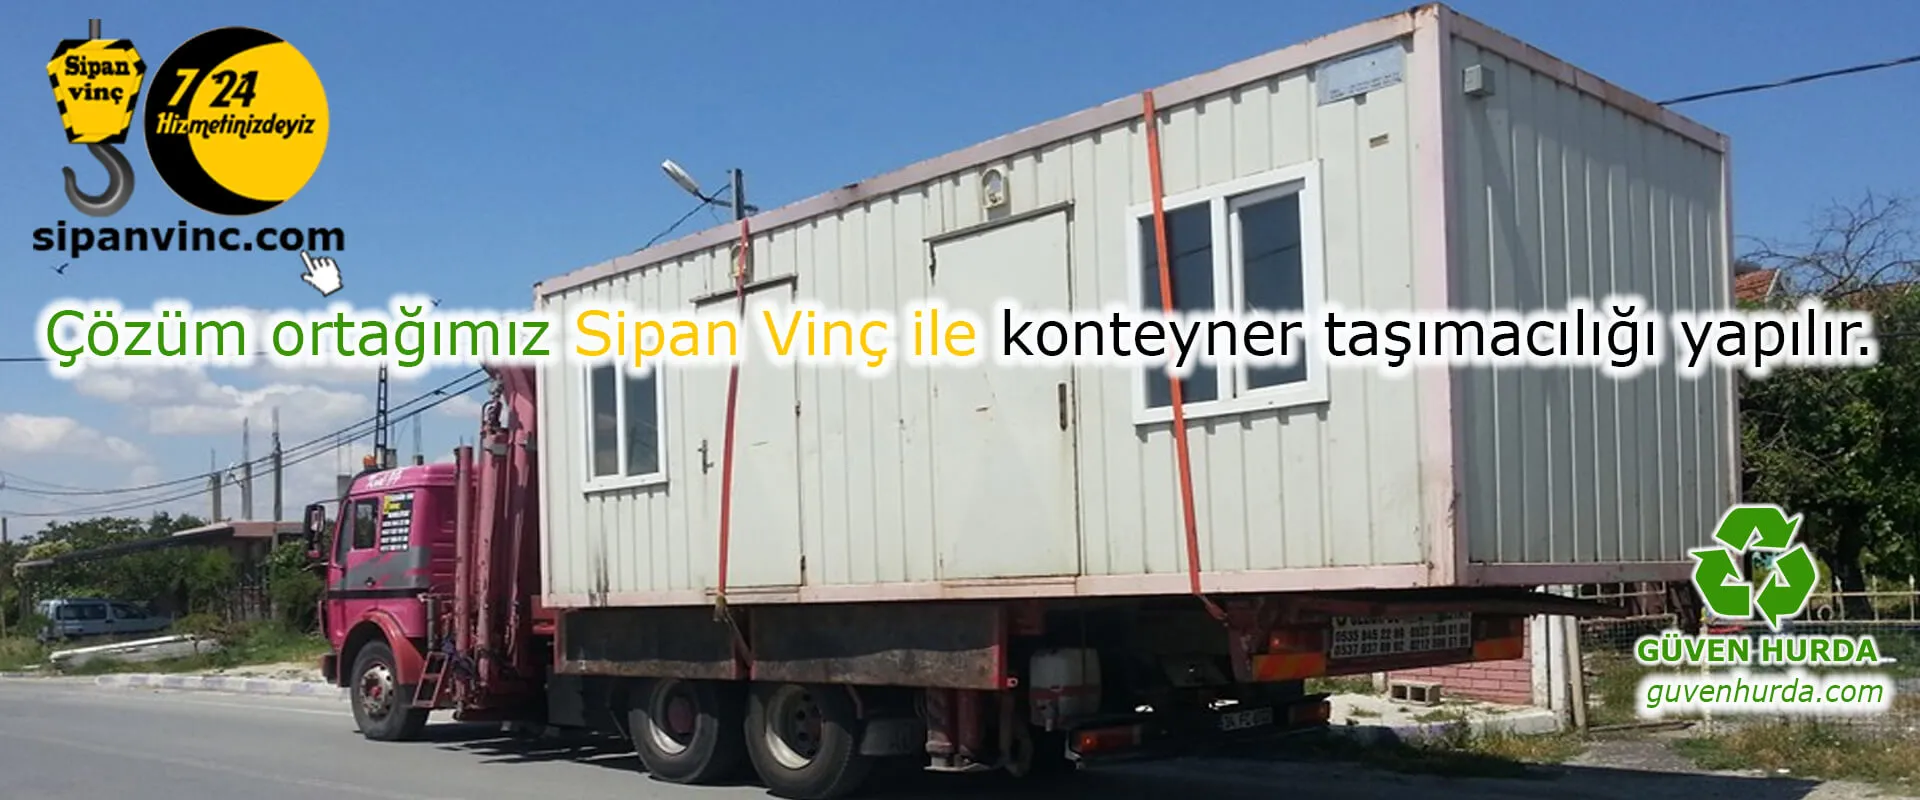 Çözüm ortağımız Sipan Vinç ile konteyner taşımacılığı yapılır.